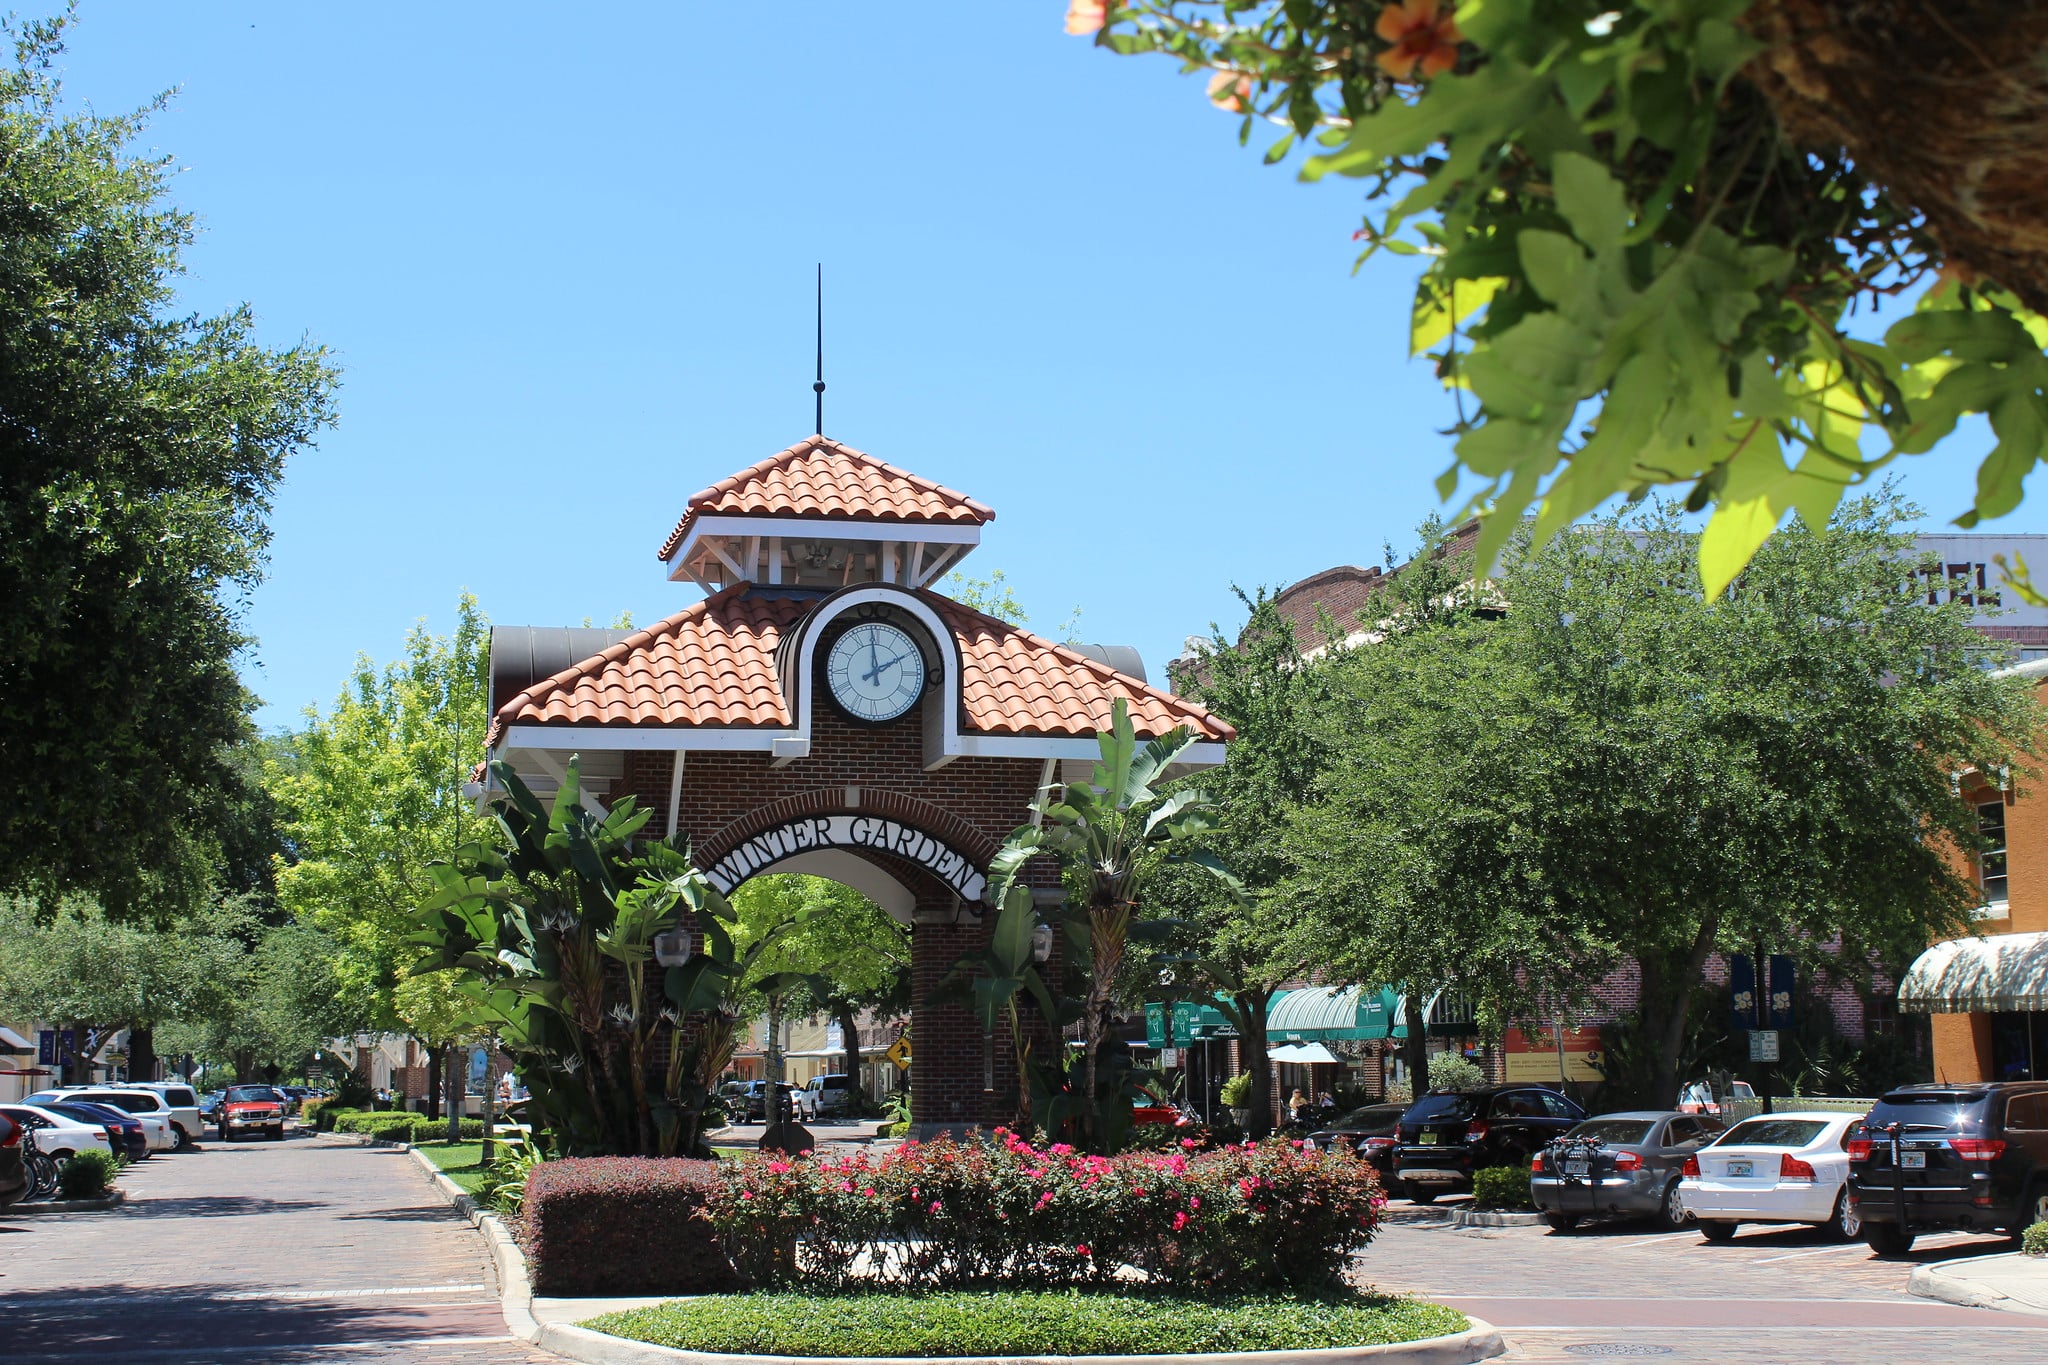 The Centennial Plaza in Winter Garden, Florida